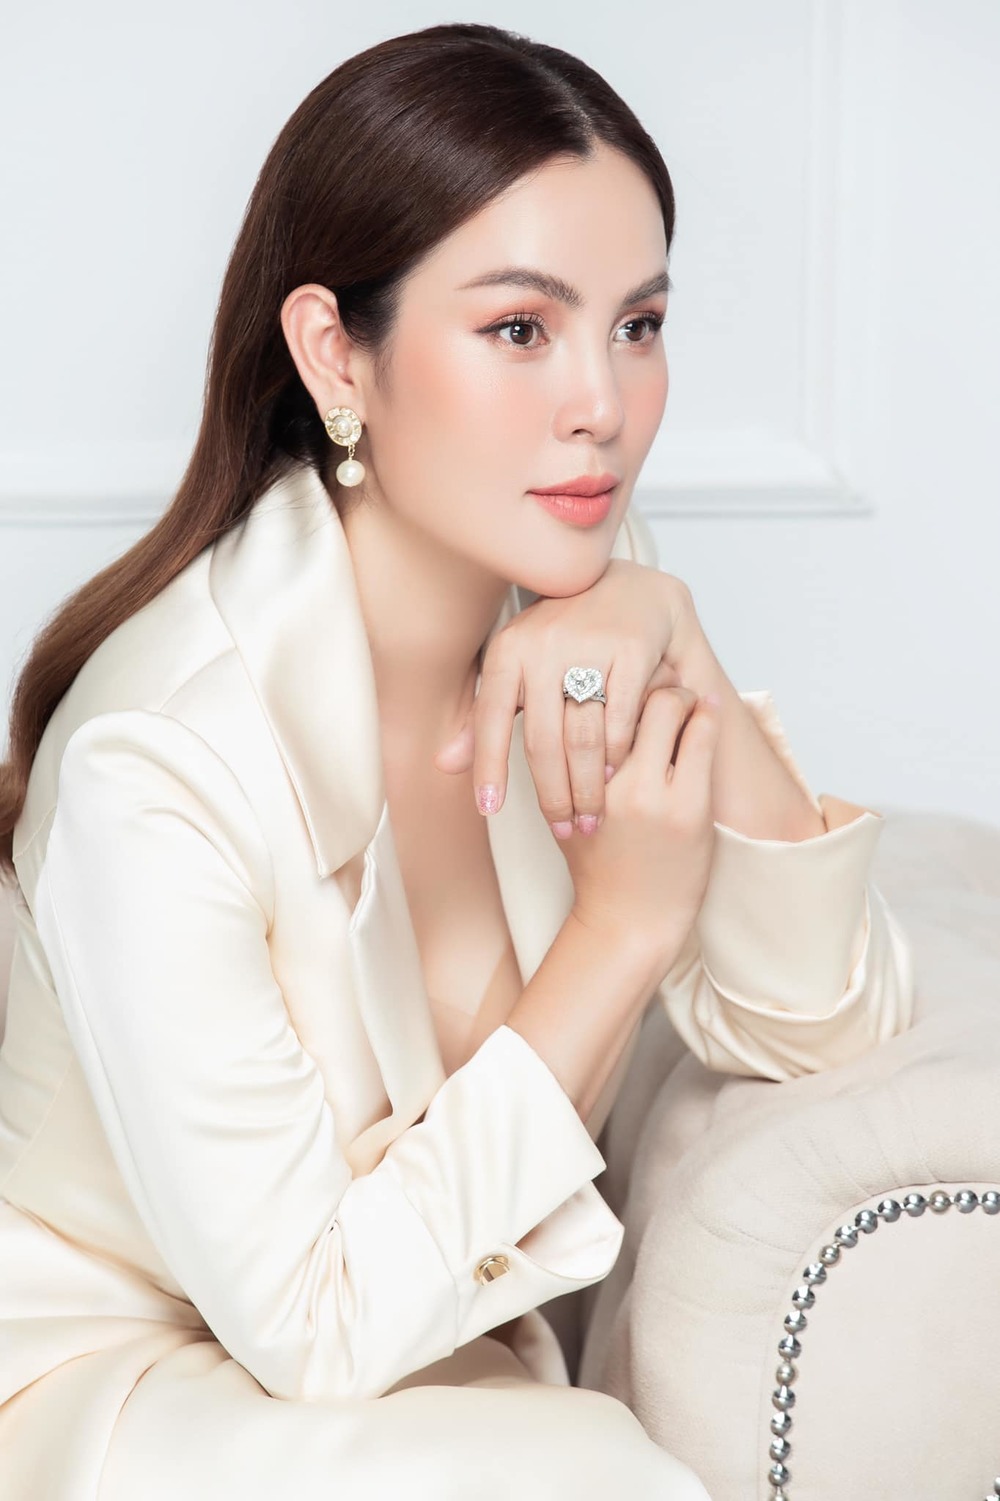 Tranh cãi phát ngôn của Hoa hậu Phương Lê khi Đan Trường ly hôn